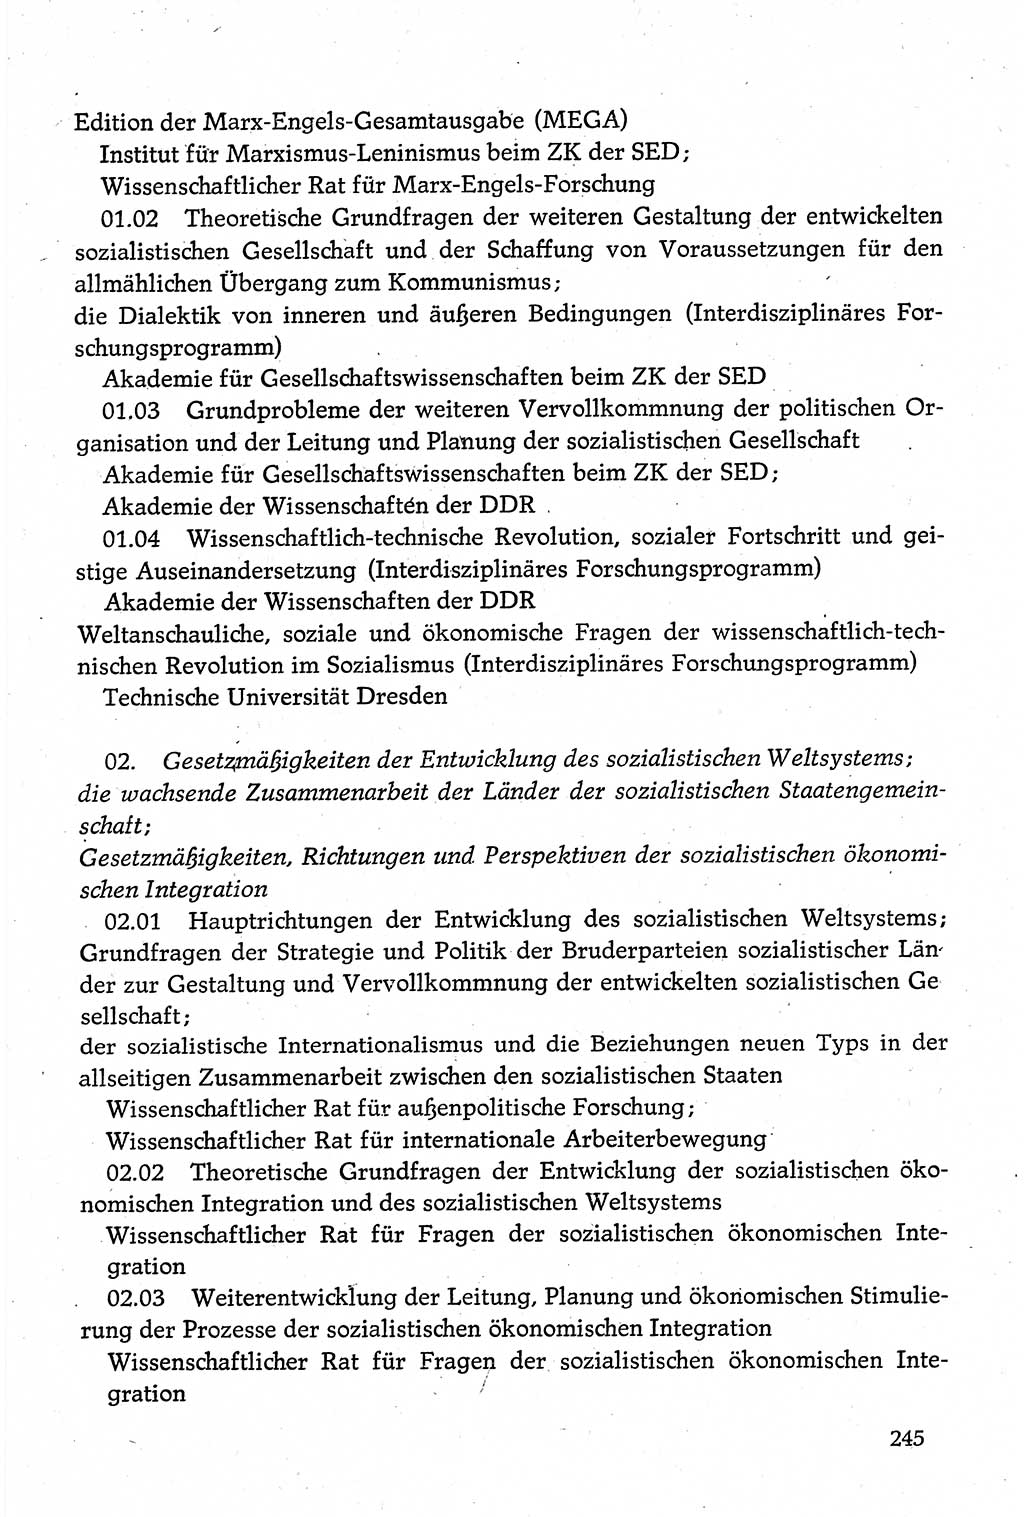 Dokumente der Sozialistischen Einheitspartei Deutschlands (SED) [Deutsche Demokratische Republik (DDR)] 1980-1981, Seite 245 (Dok. SED DDR 1980-1981, S. 245)